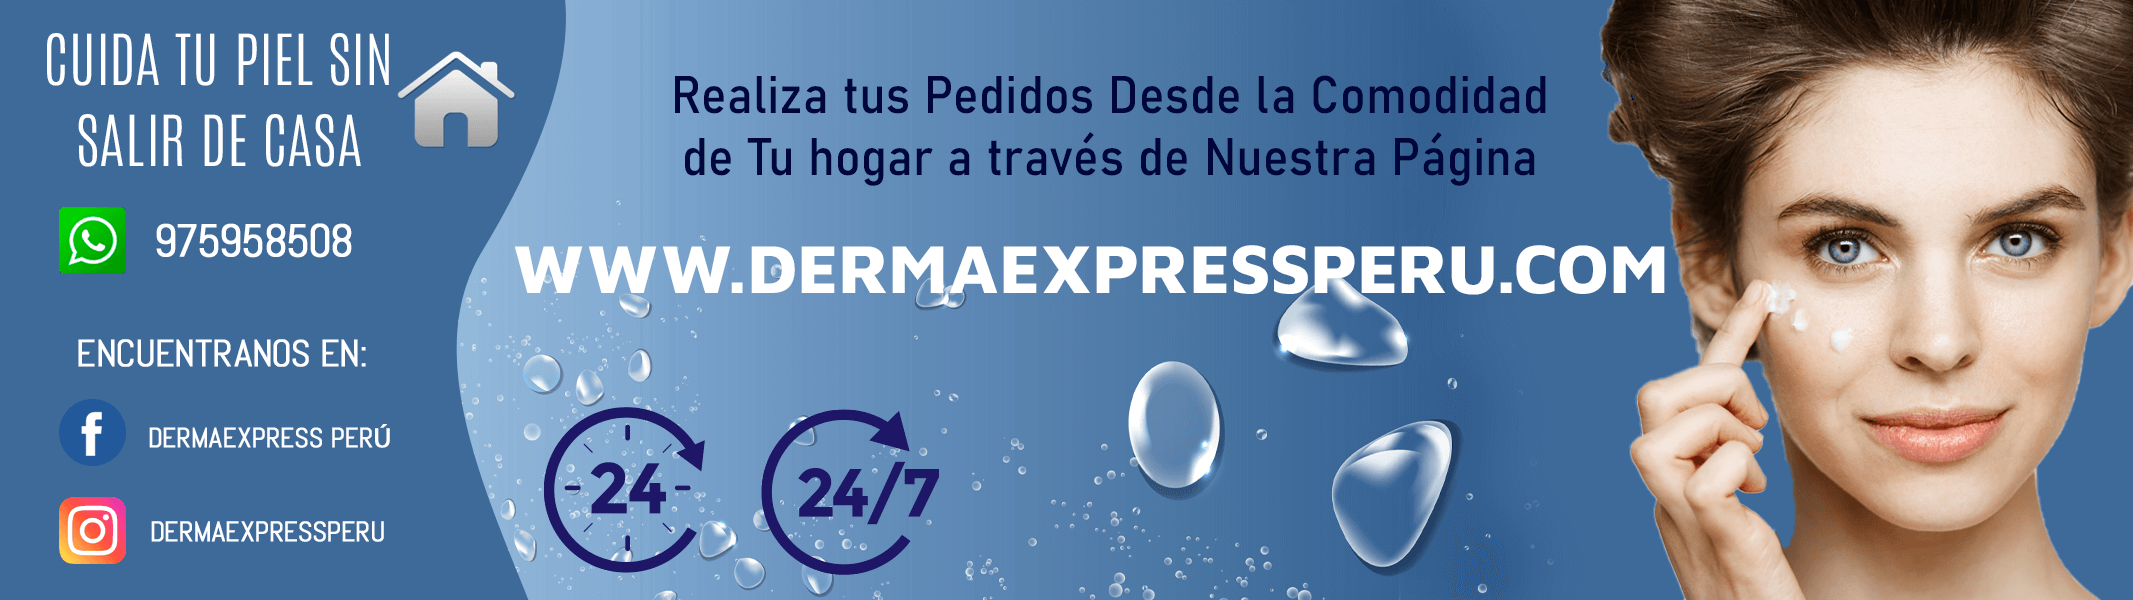 DermaExpress cuida tu piel - DermaExpress Perú